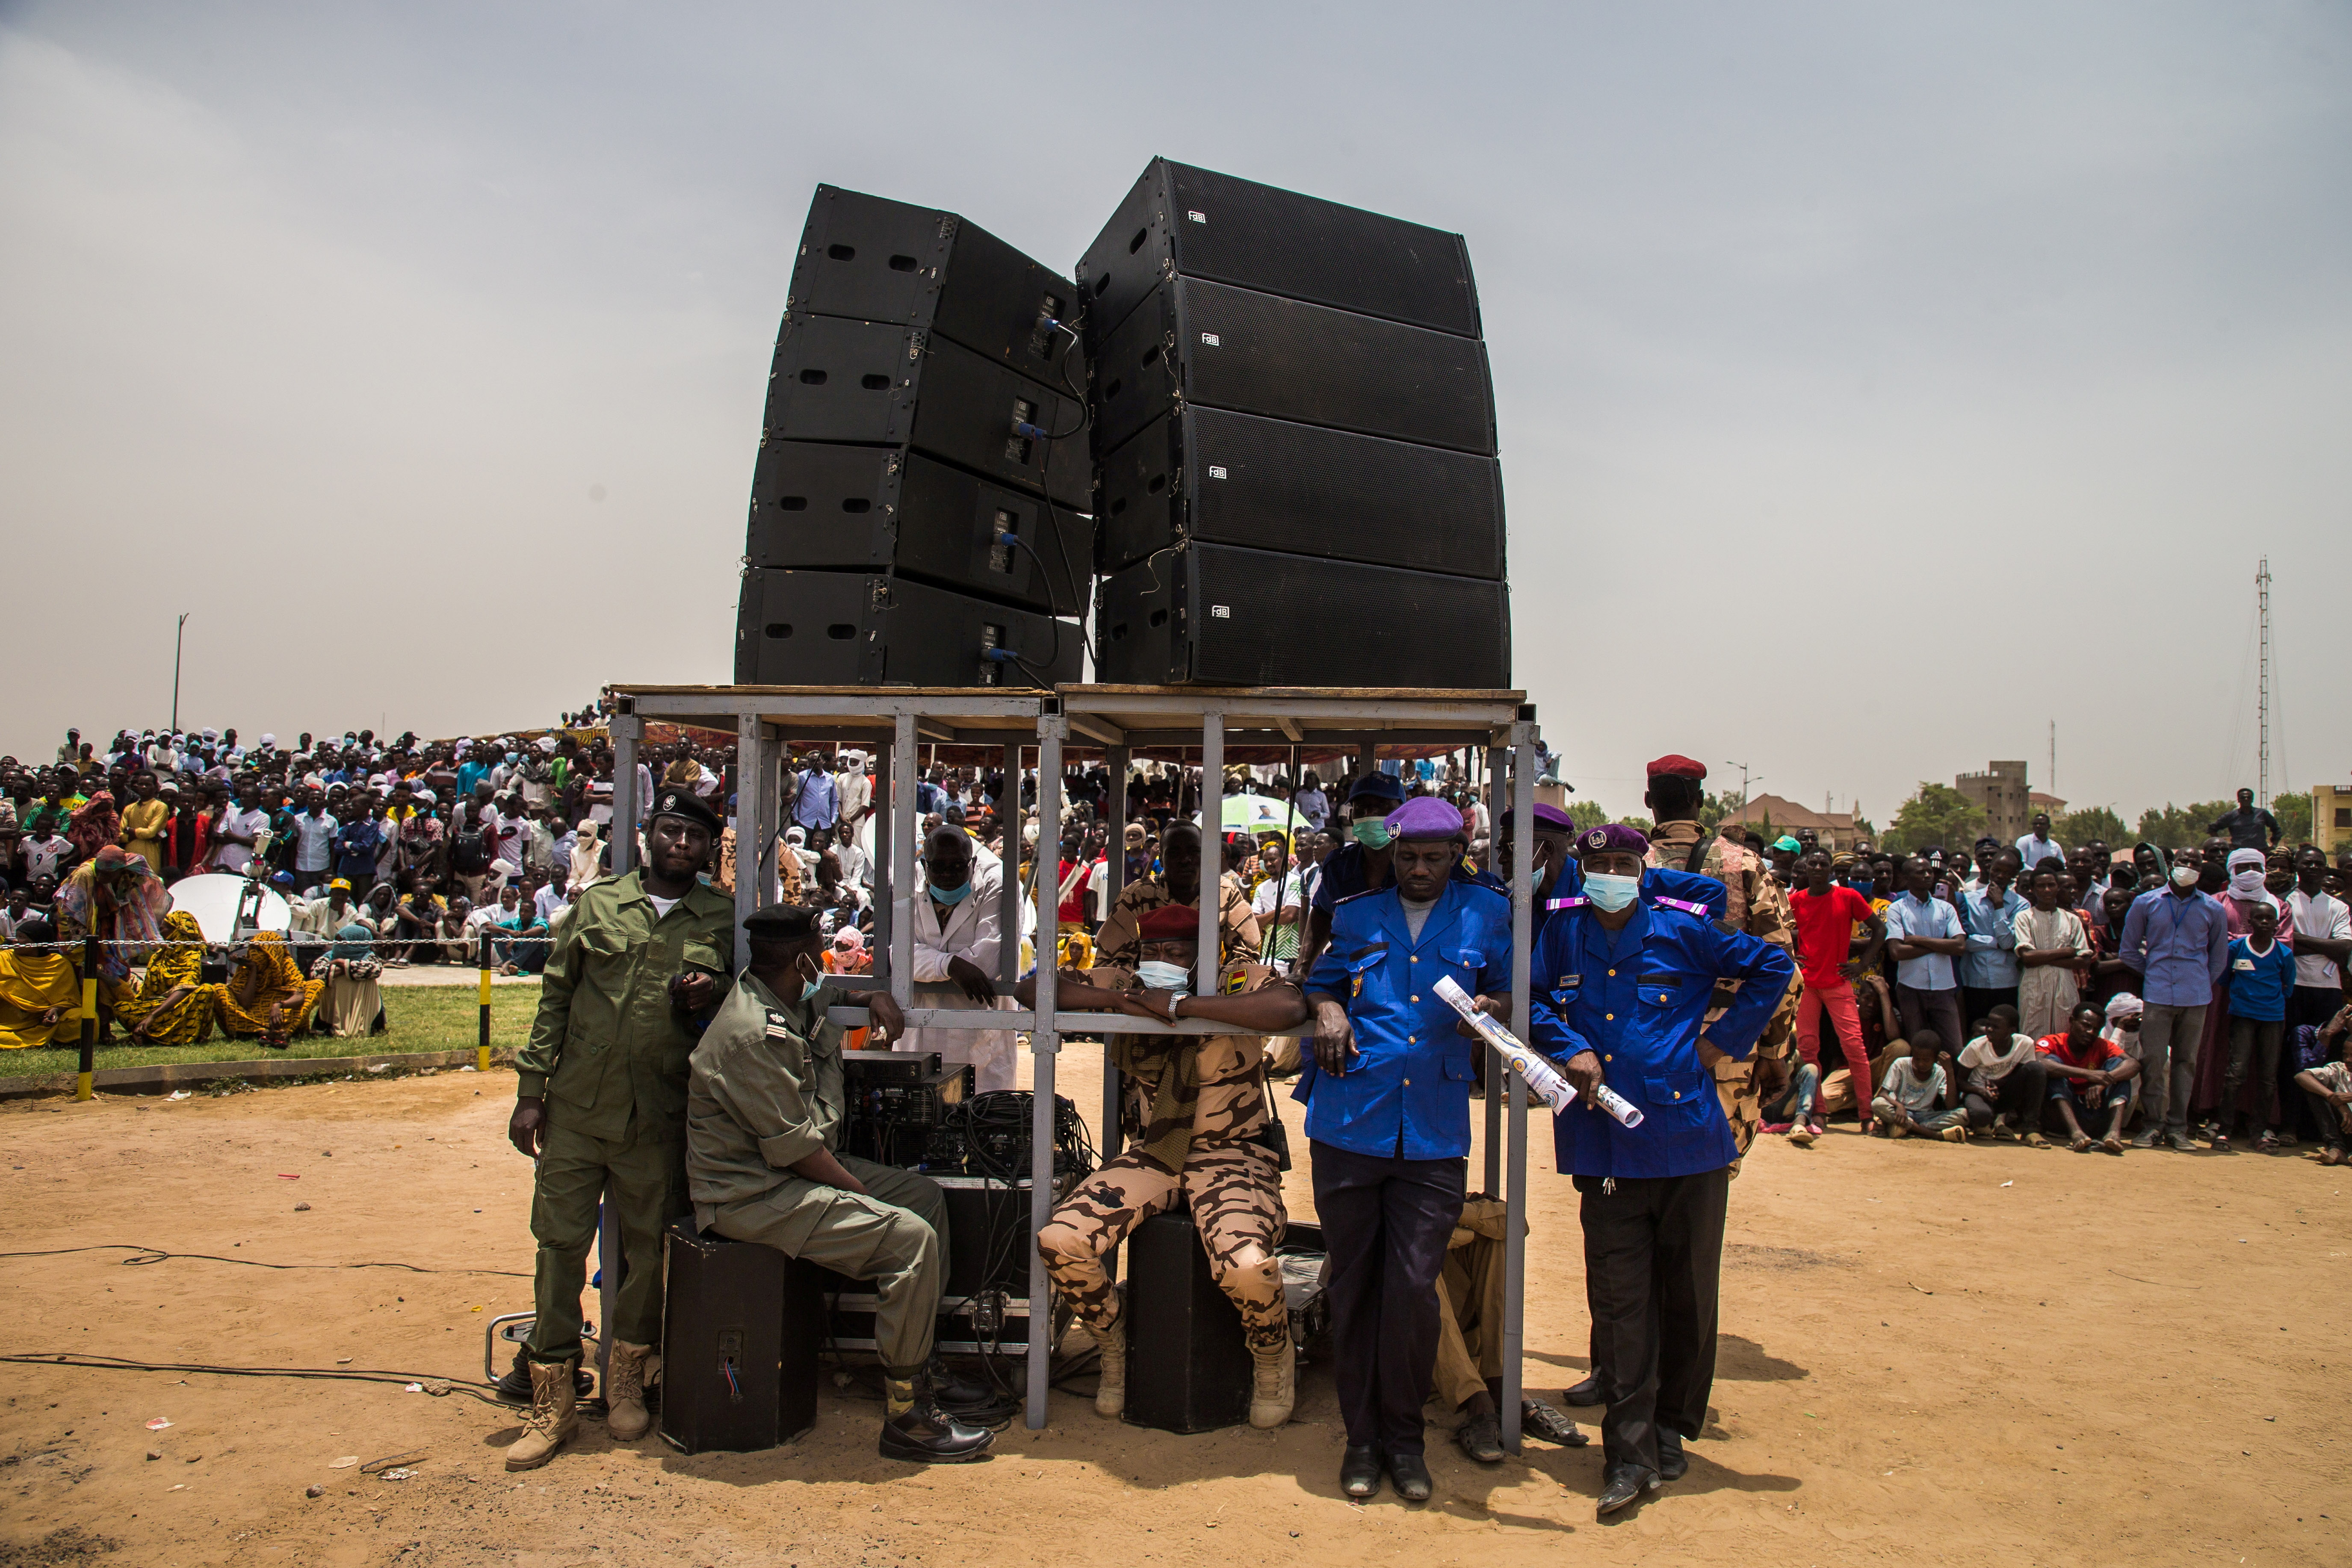 Funeral of late Chadian President Deby in N'Djamena